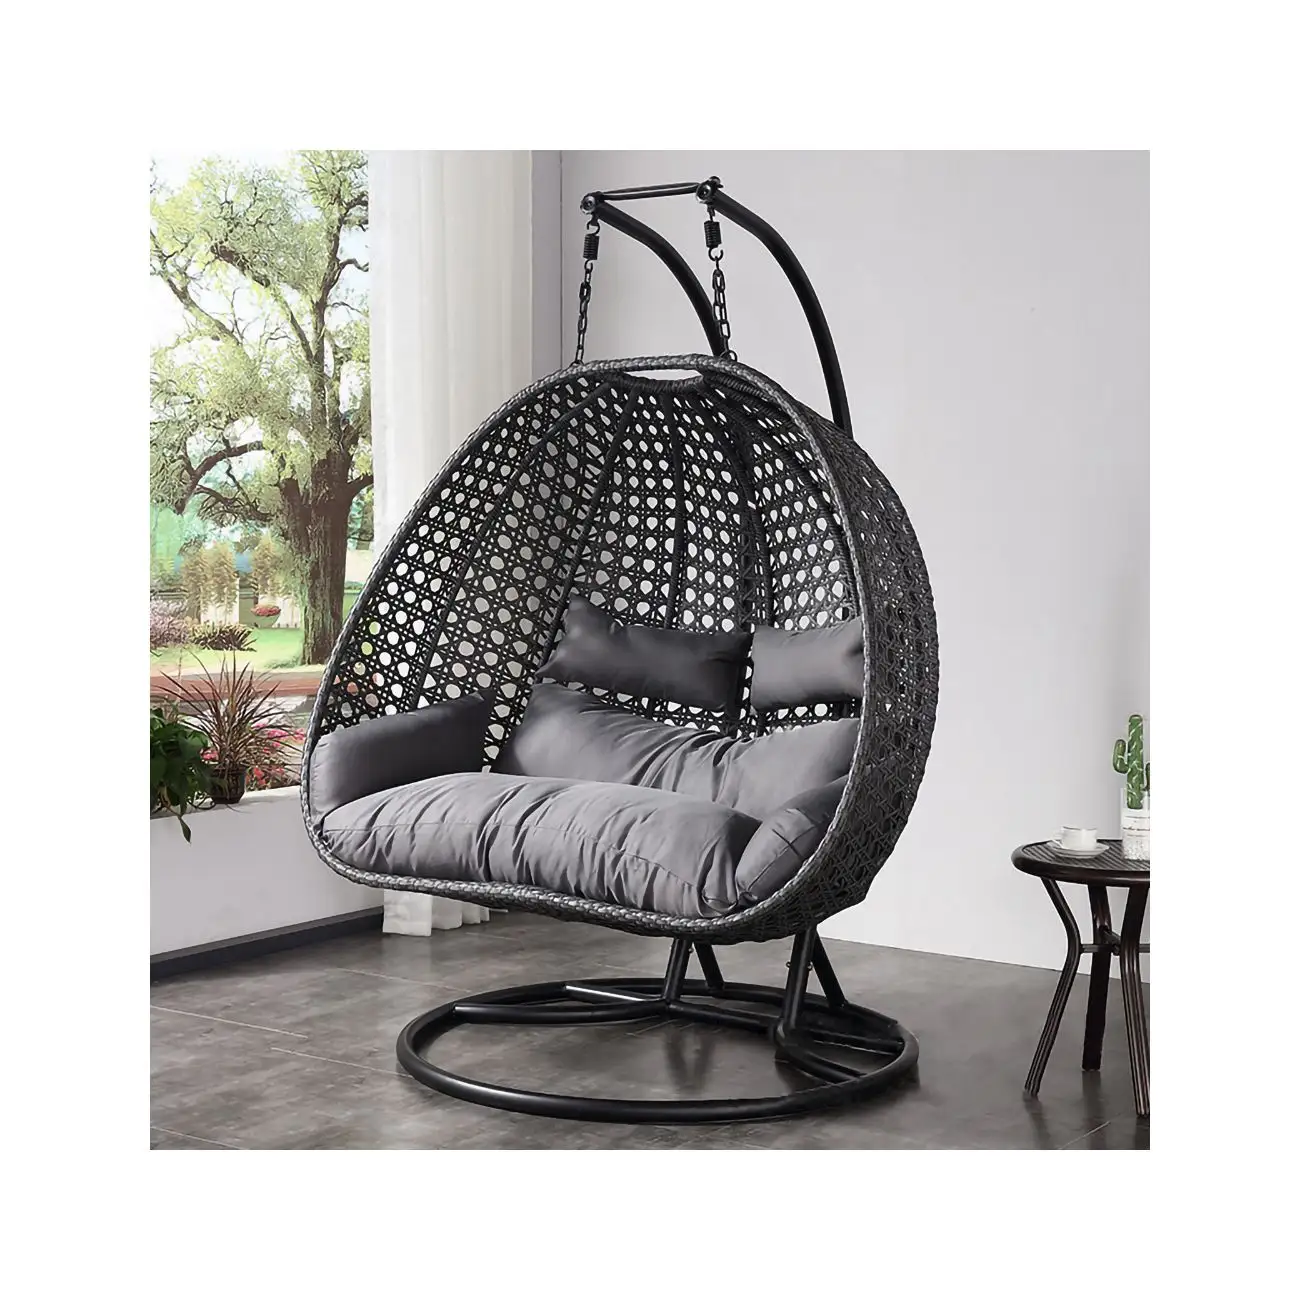 현대 등나무 교수형 계란 의자 스탠드 파티오 스윙 흔들 바구니 해먹 의자 발코니 안뜰 정원 야외 가구